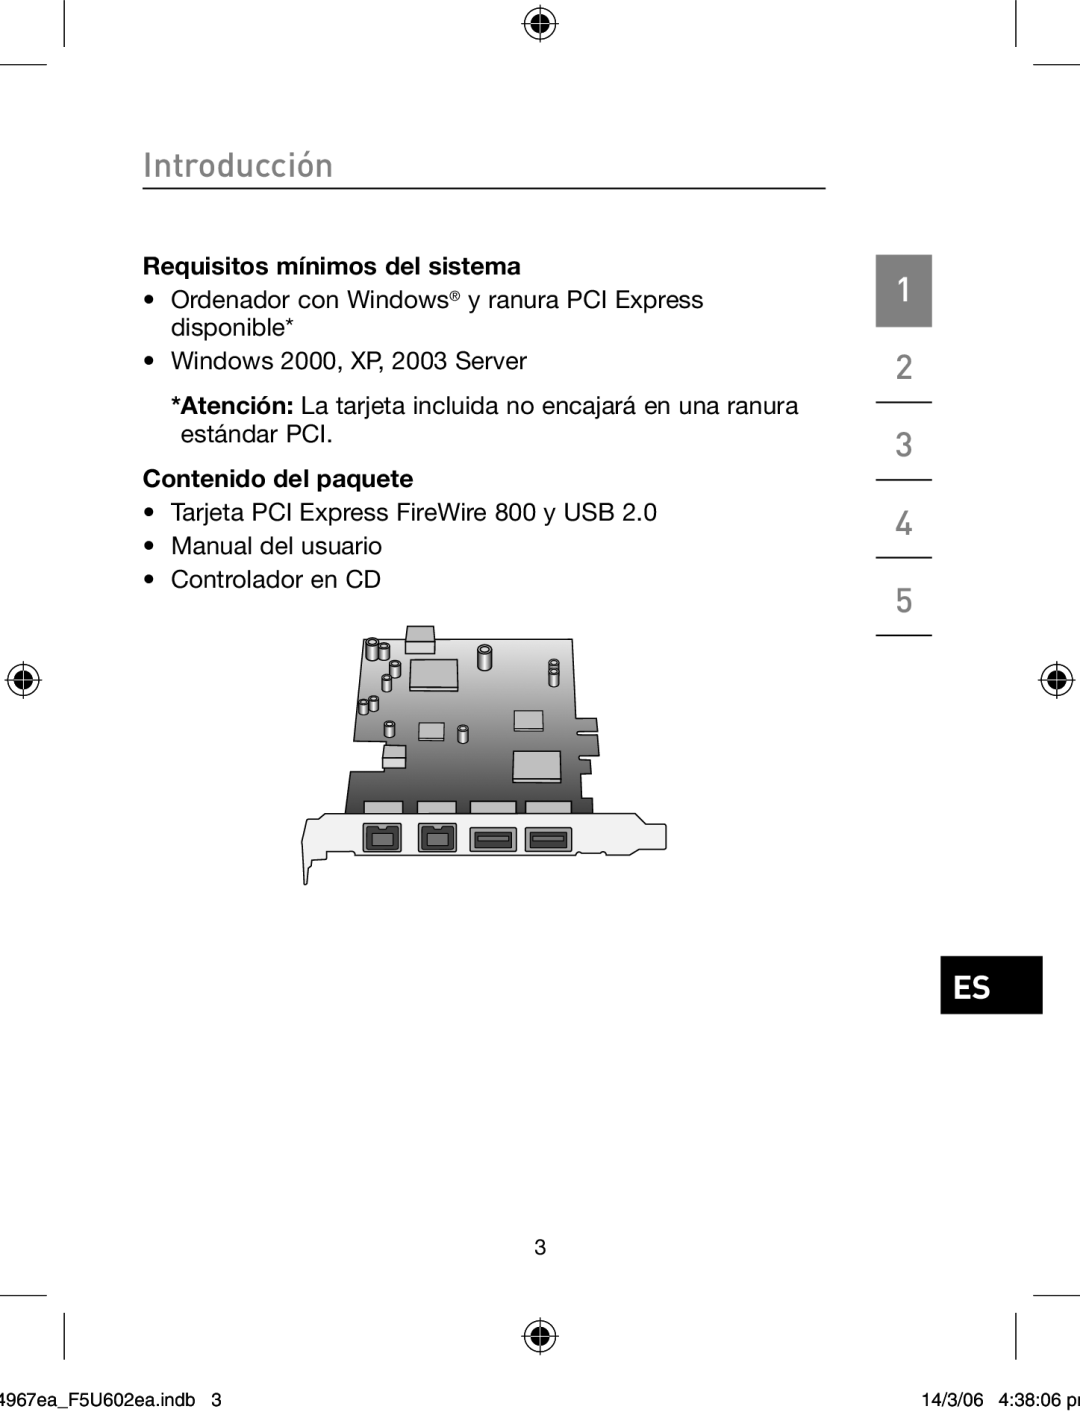 Belkin F5U602EA Requisitos mínimos del sistema, Contenido del paquete, Introducción, 4967eaF5U602ea.indb, 14/3/06 43806 pm 